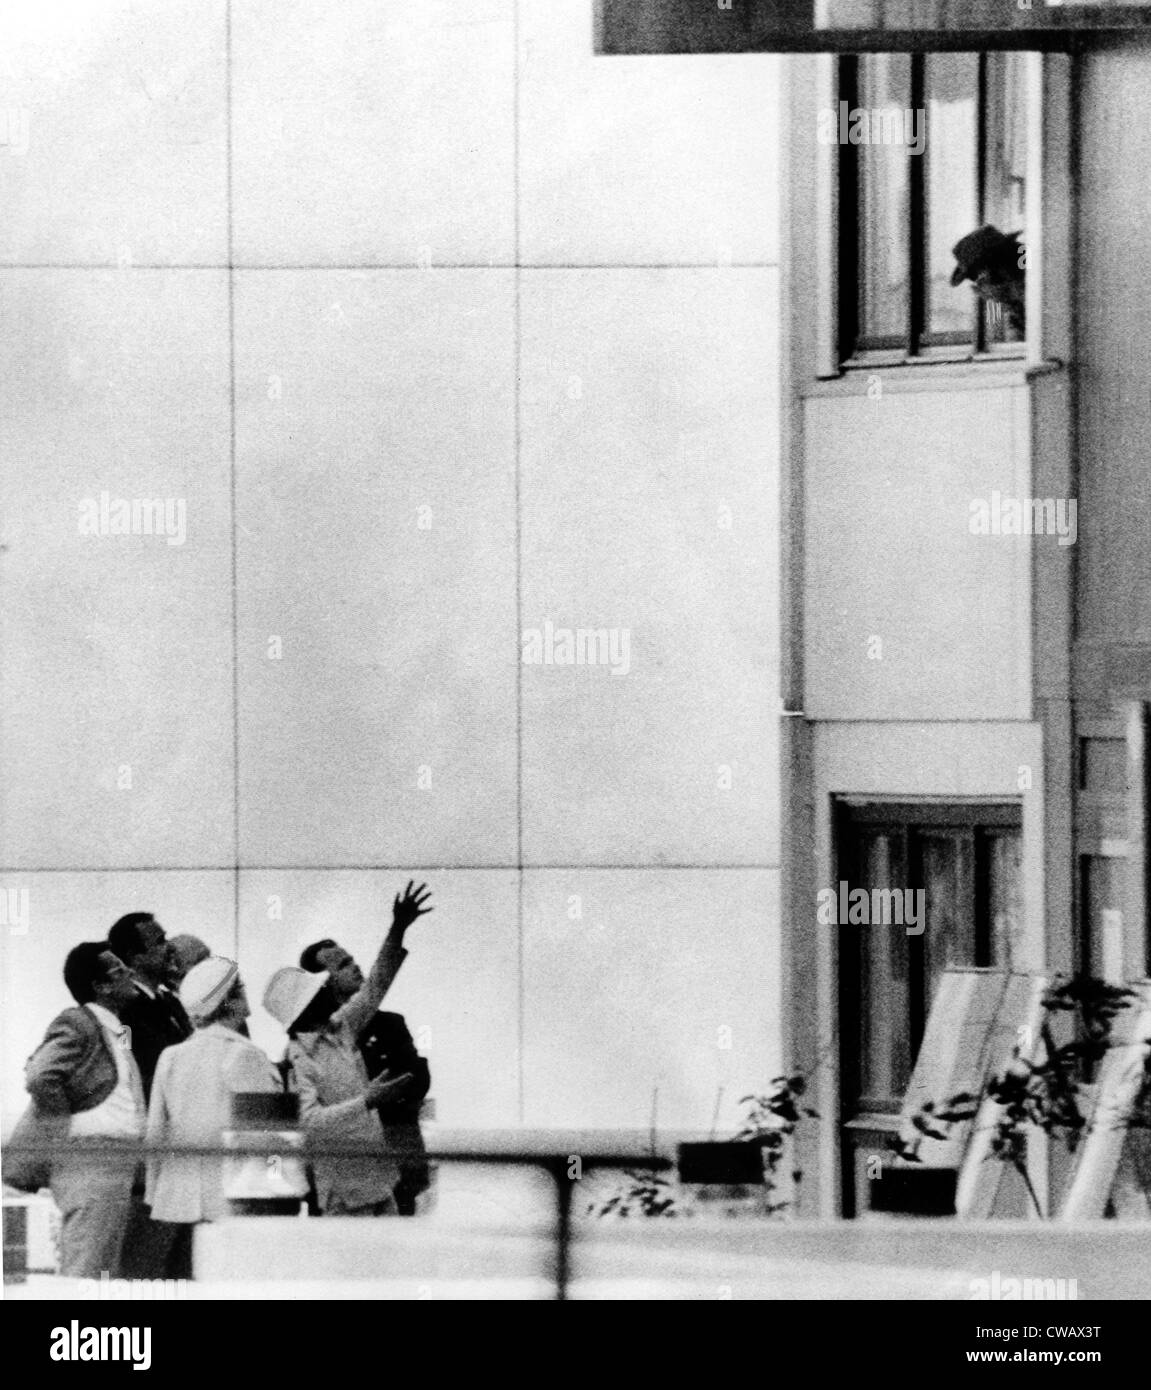 Olympiade 1972, Mitglieder von "Schwarzer September" (Hüte tragen) verleihen außerhalb israelische Viertel, München, 05.09.1972... Stockfoto